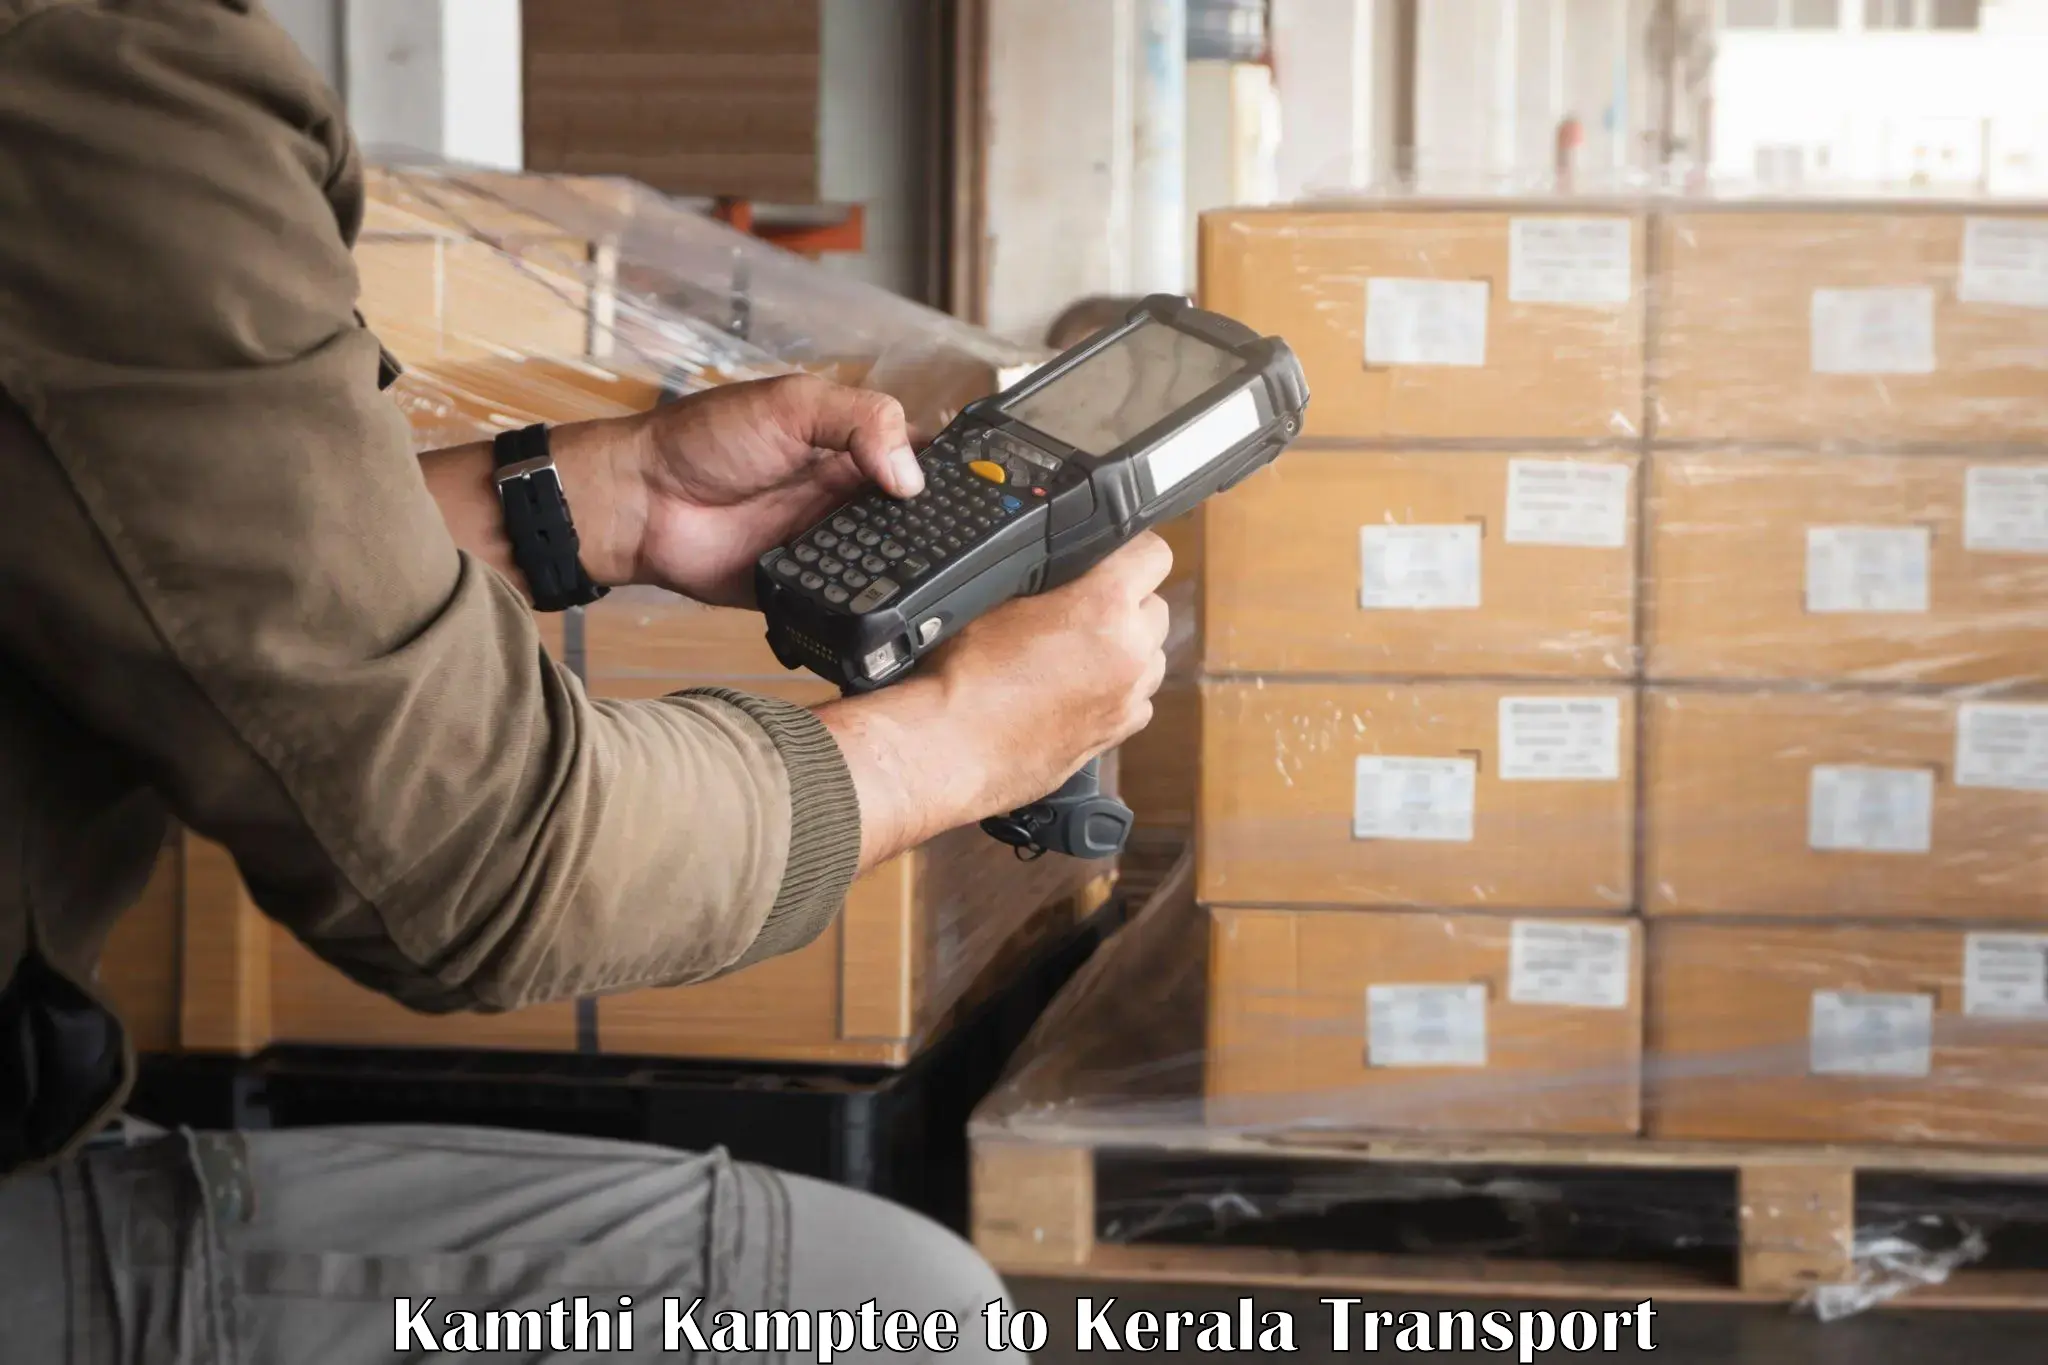 Express transport services Kamthi Kamptee to Kiliyanthara